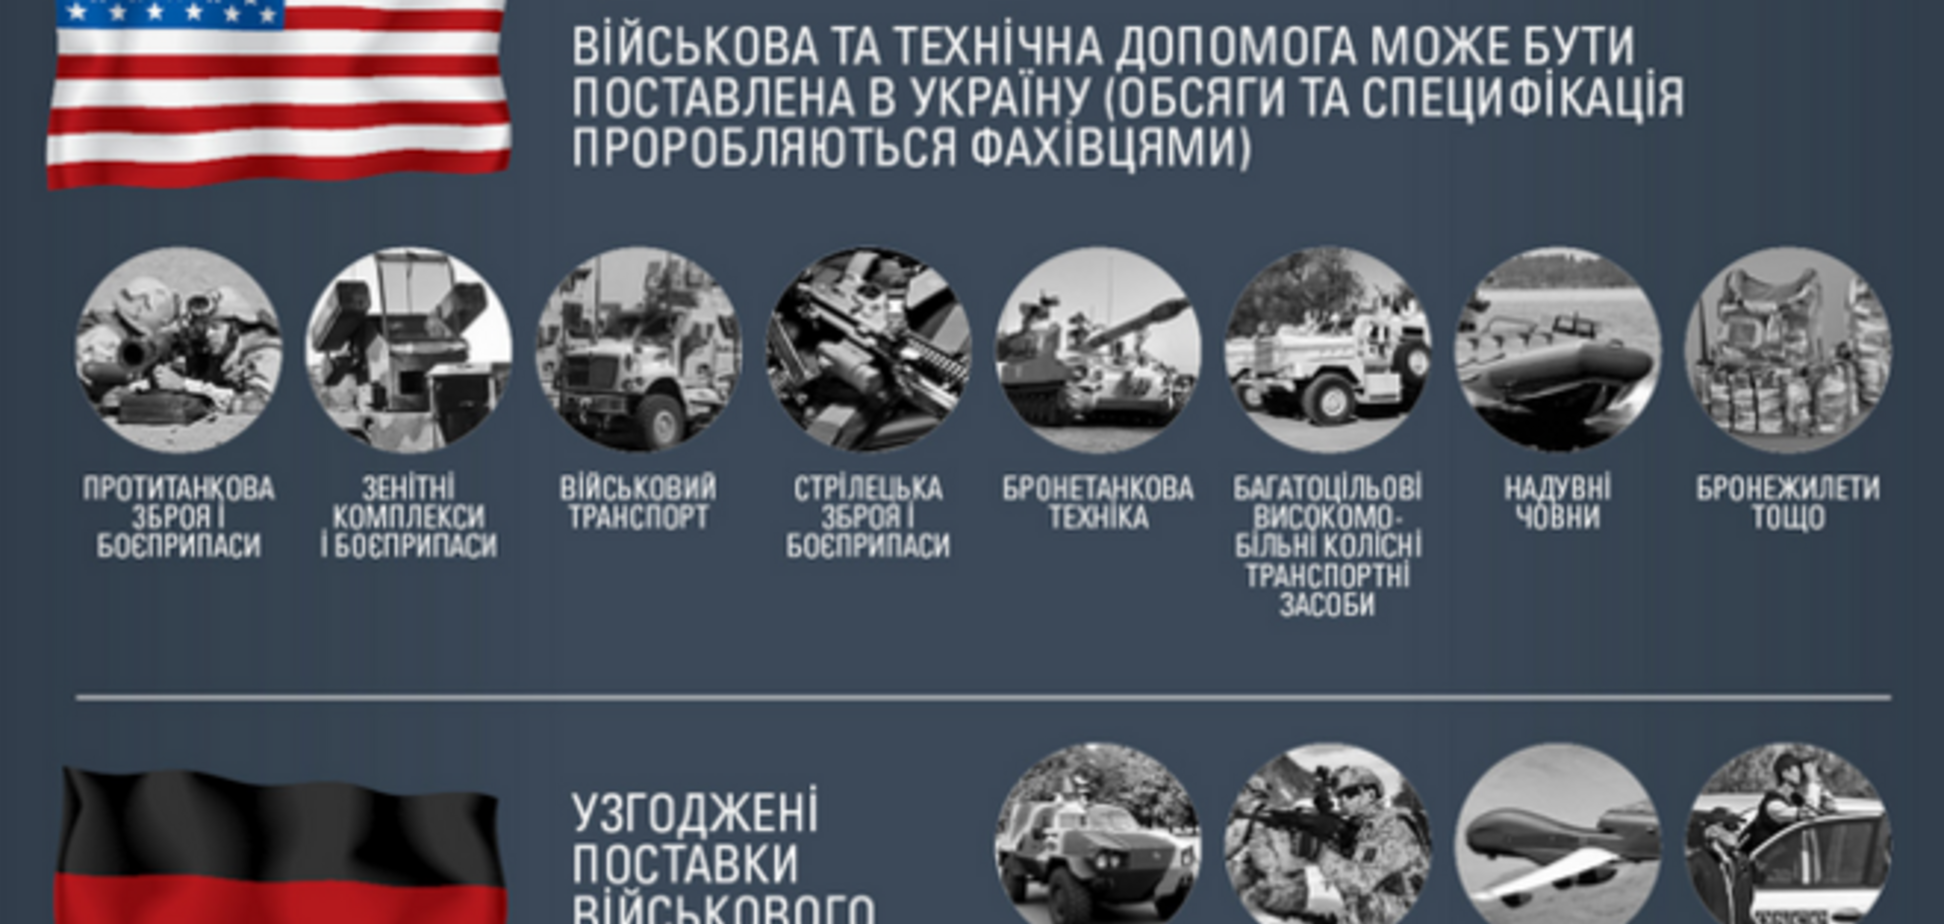 Какое оружие могут предоставить Украине страны НАТО: опубликована инфографика